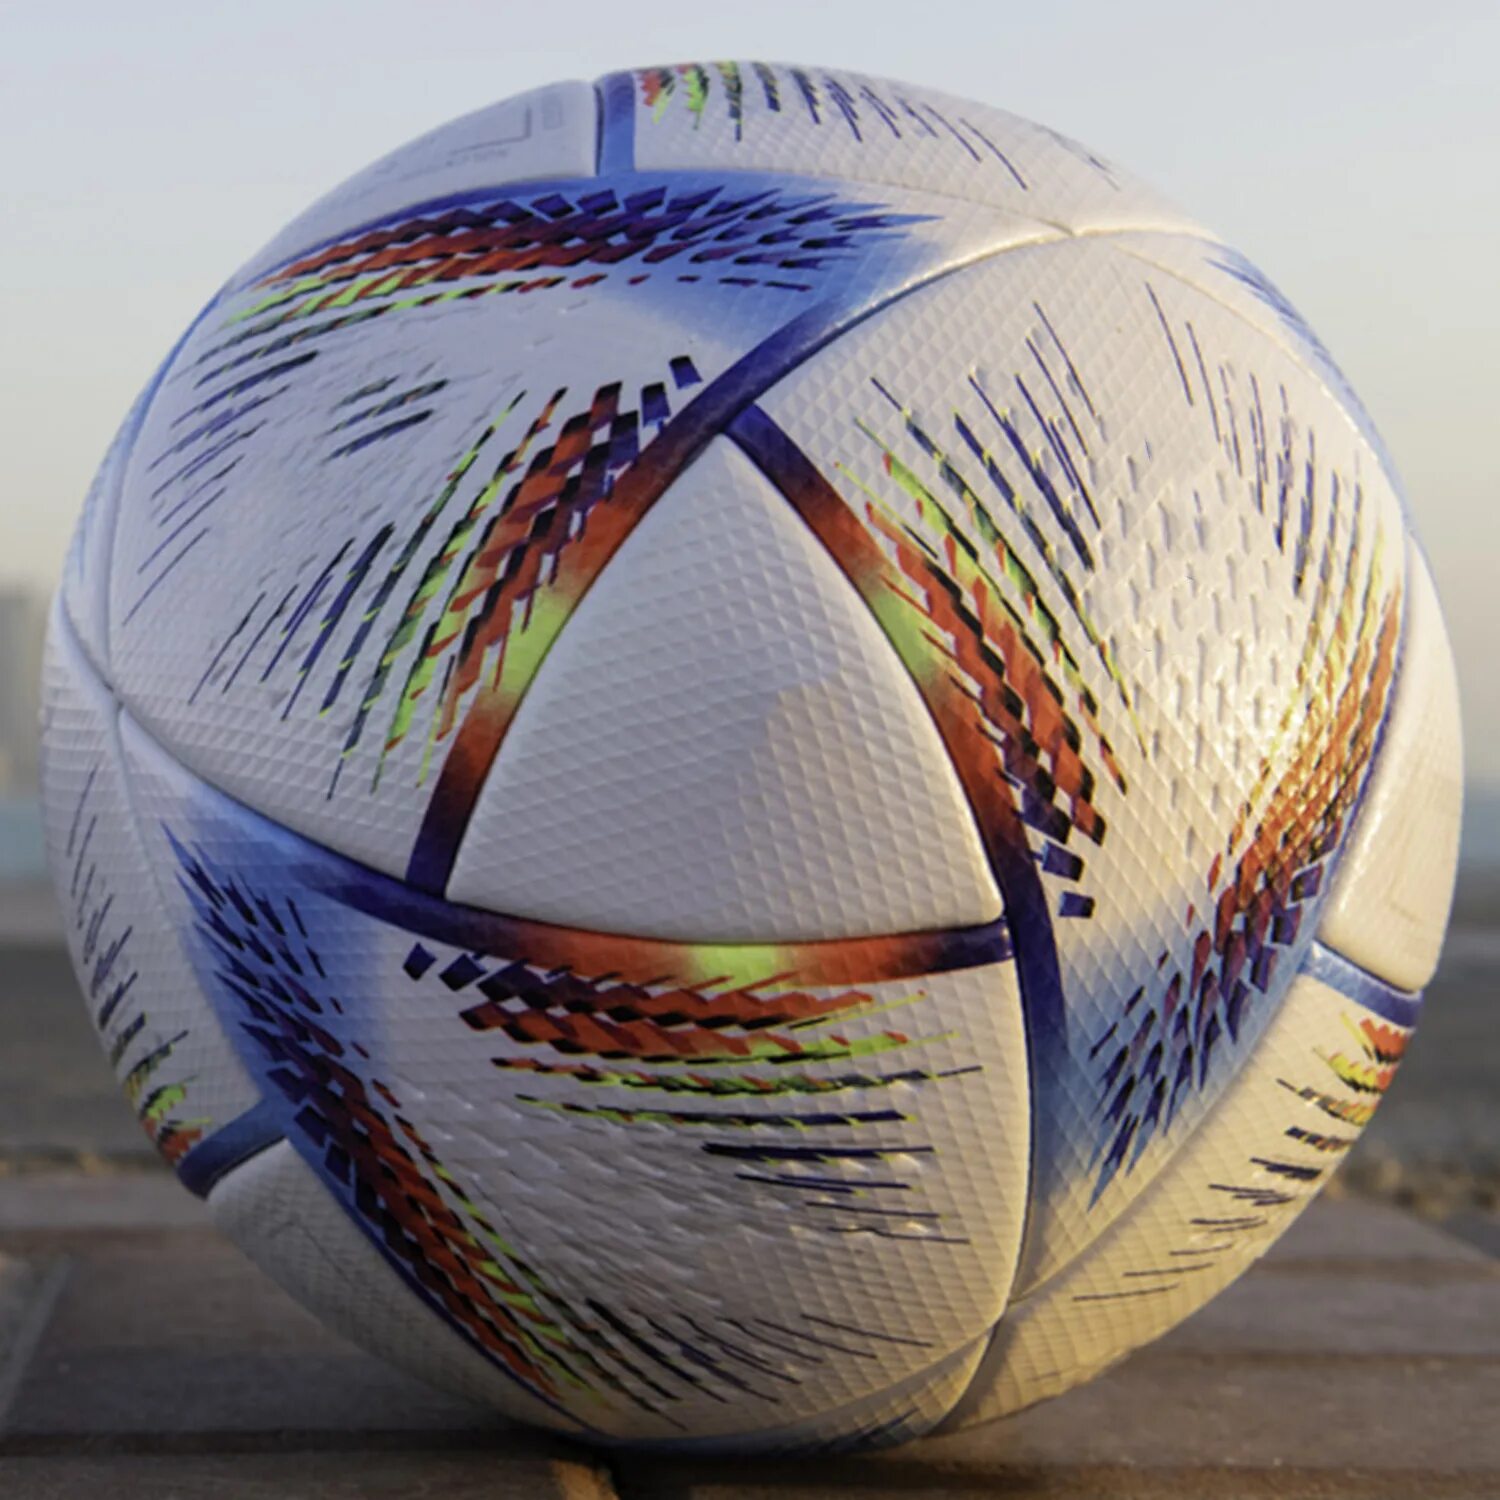 Ball 2022. Мяч adidas FIFA World Cup 2022 al Rihla. Футбольный мяч Qatar 2022. Мяч адидас ЧМ 92. Мяч Катар 2022.